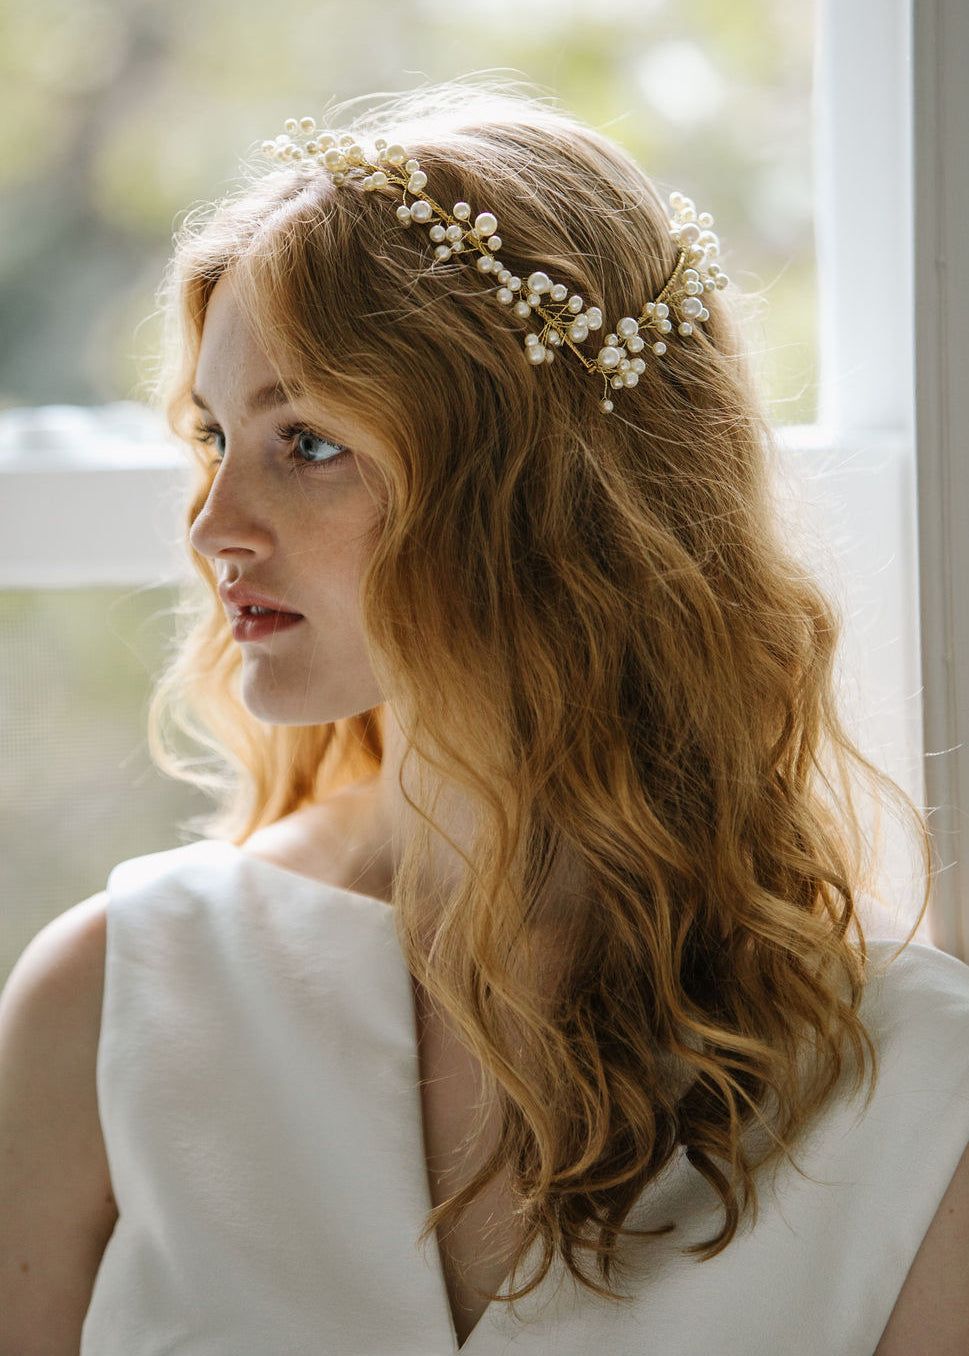 Fashion Floral Hair Band Flower Headband Bride Tiara Wedding Hair Accessories 